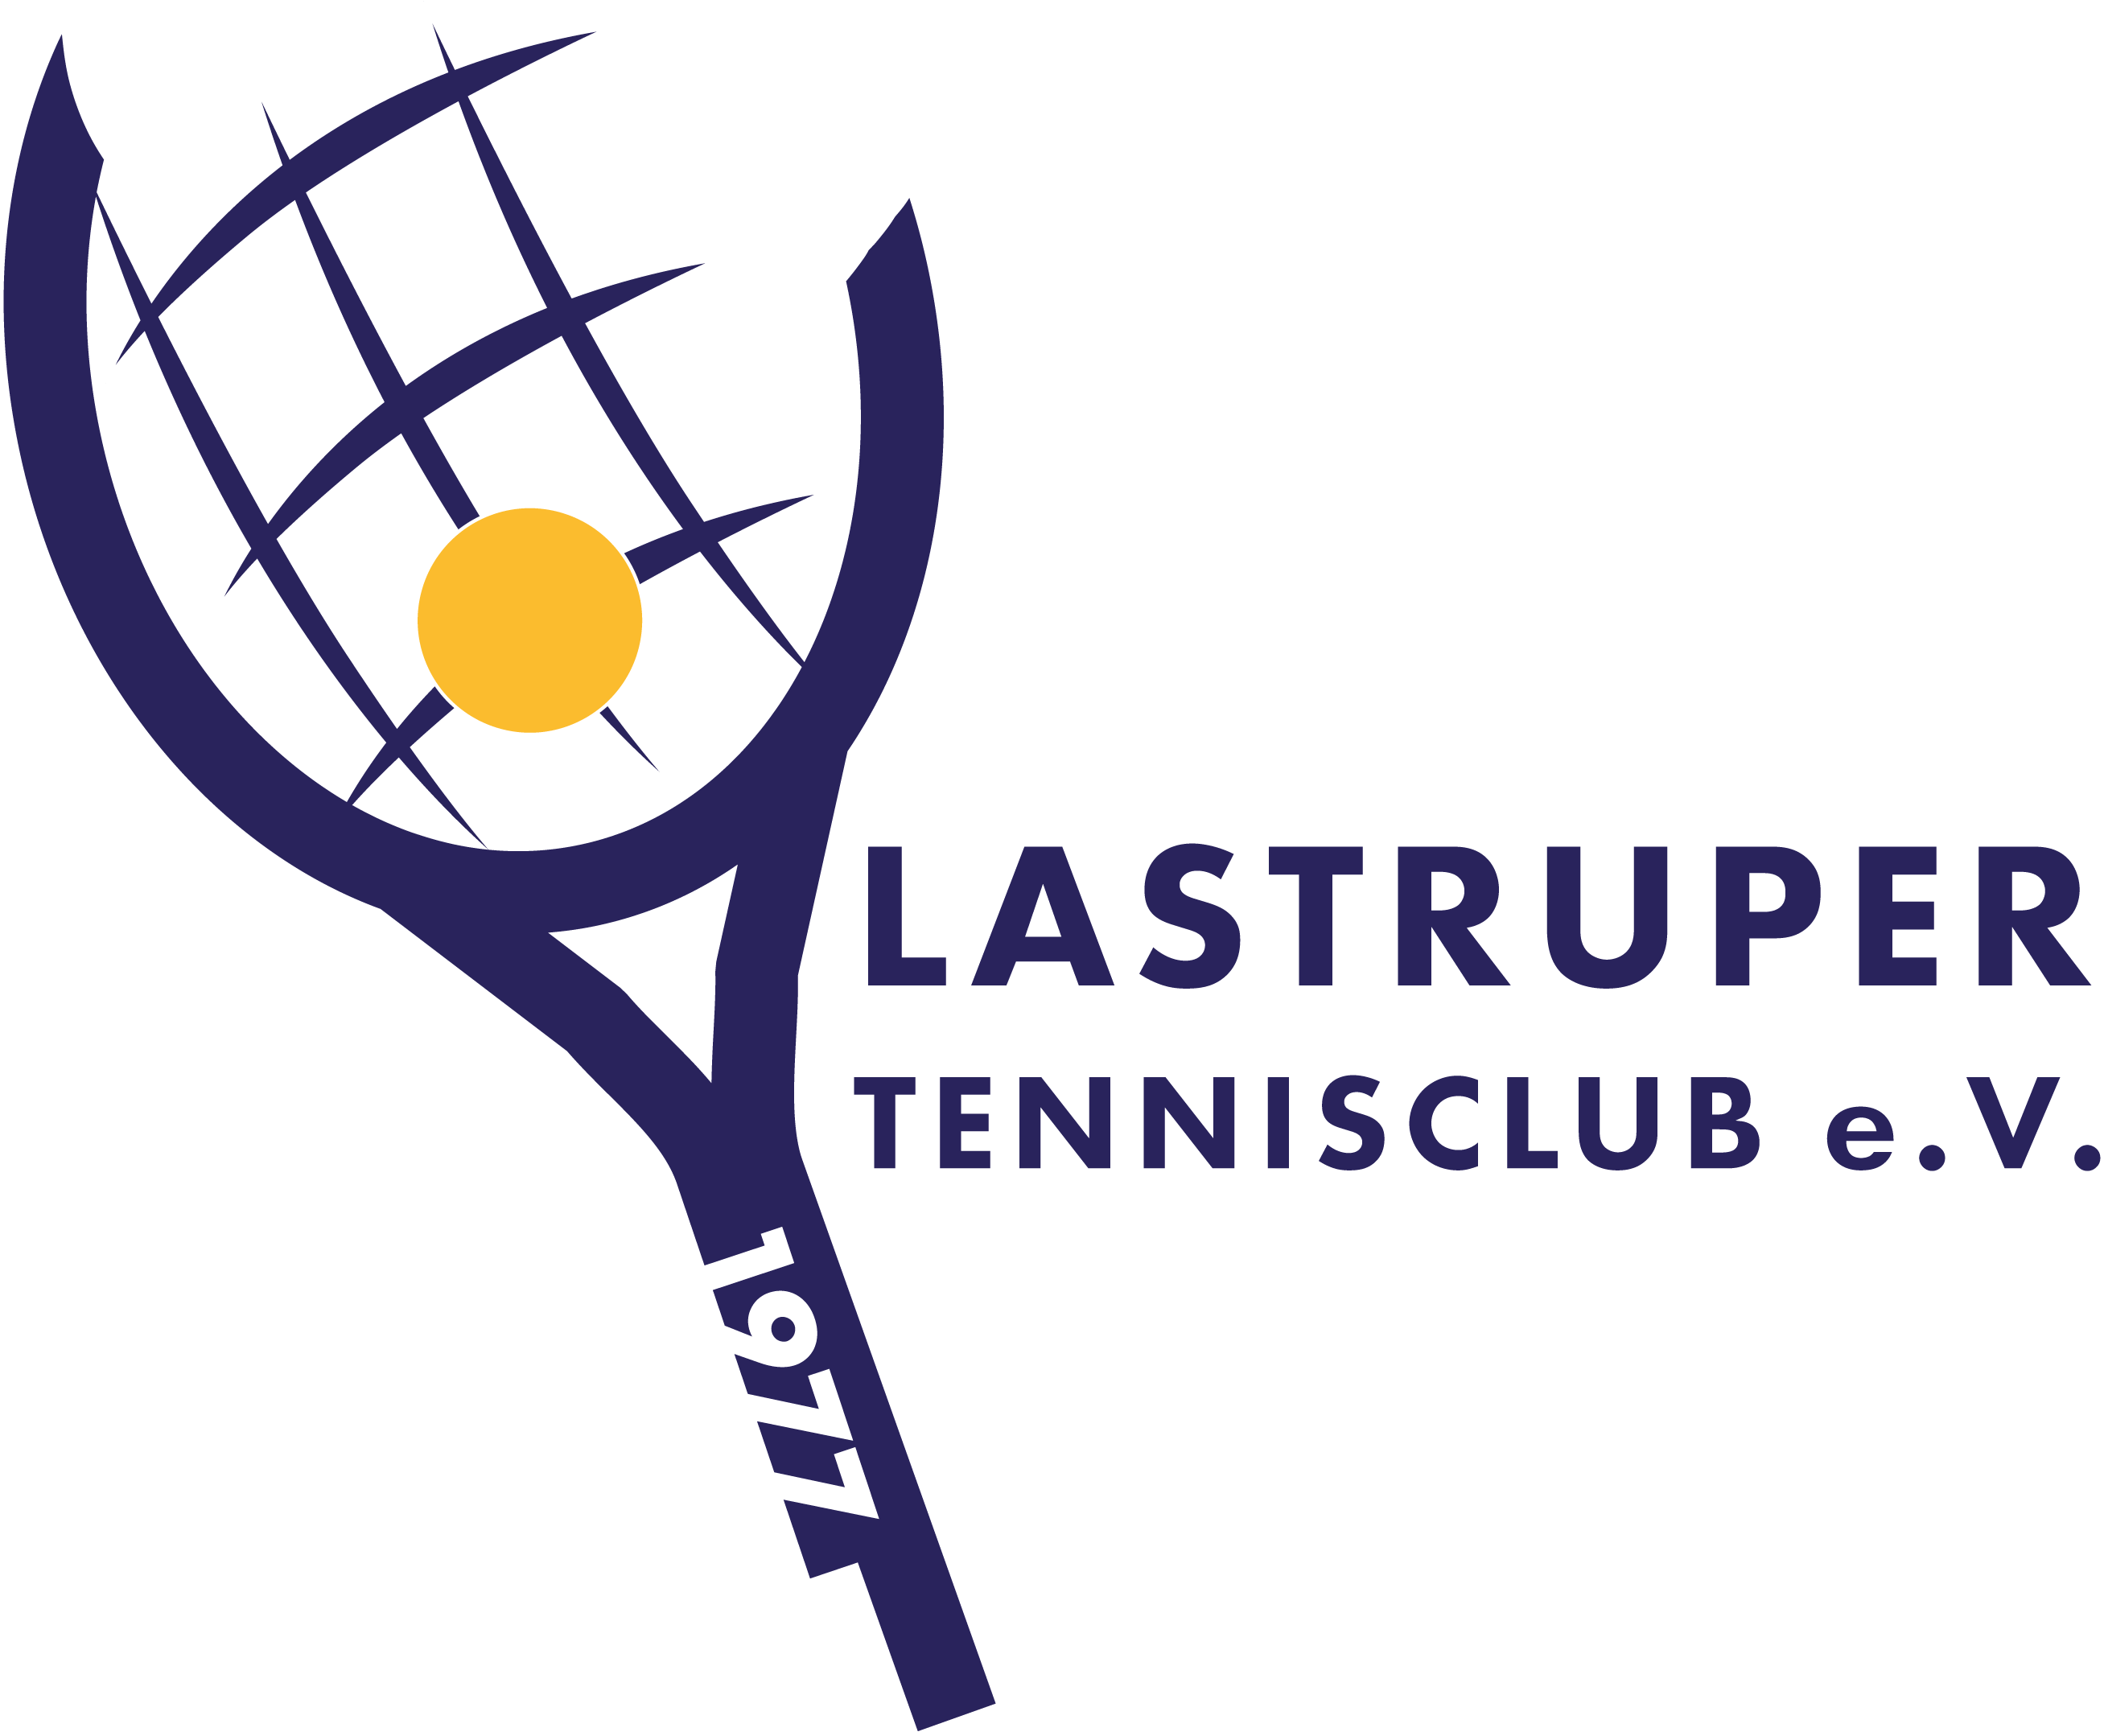 Lastruper Tennisclub e.V.